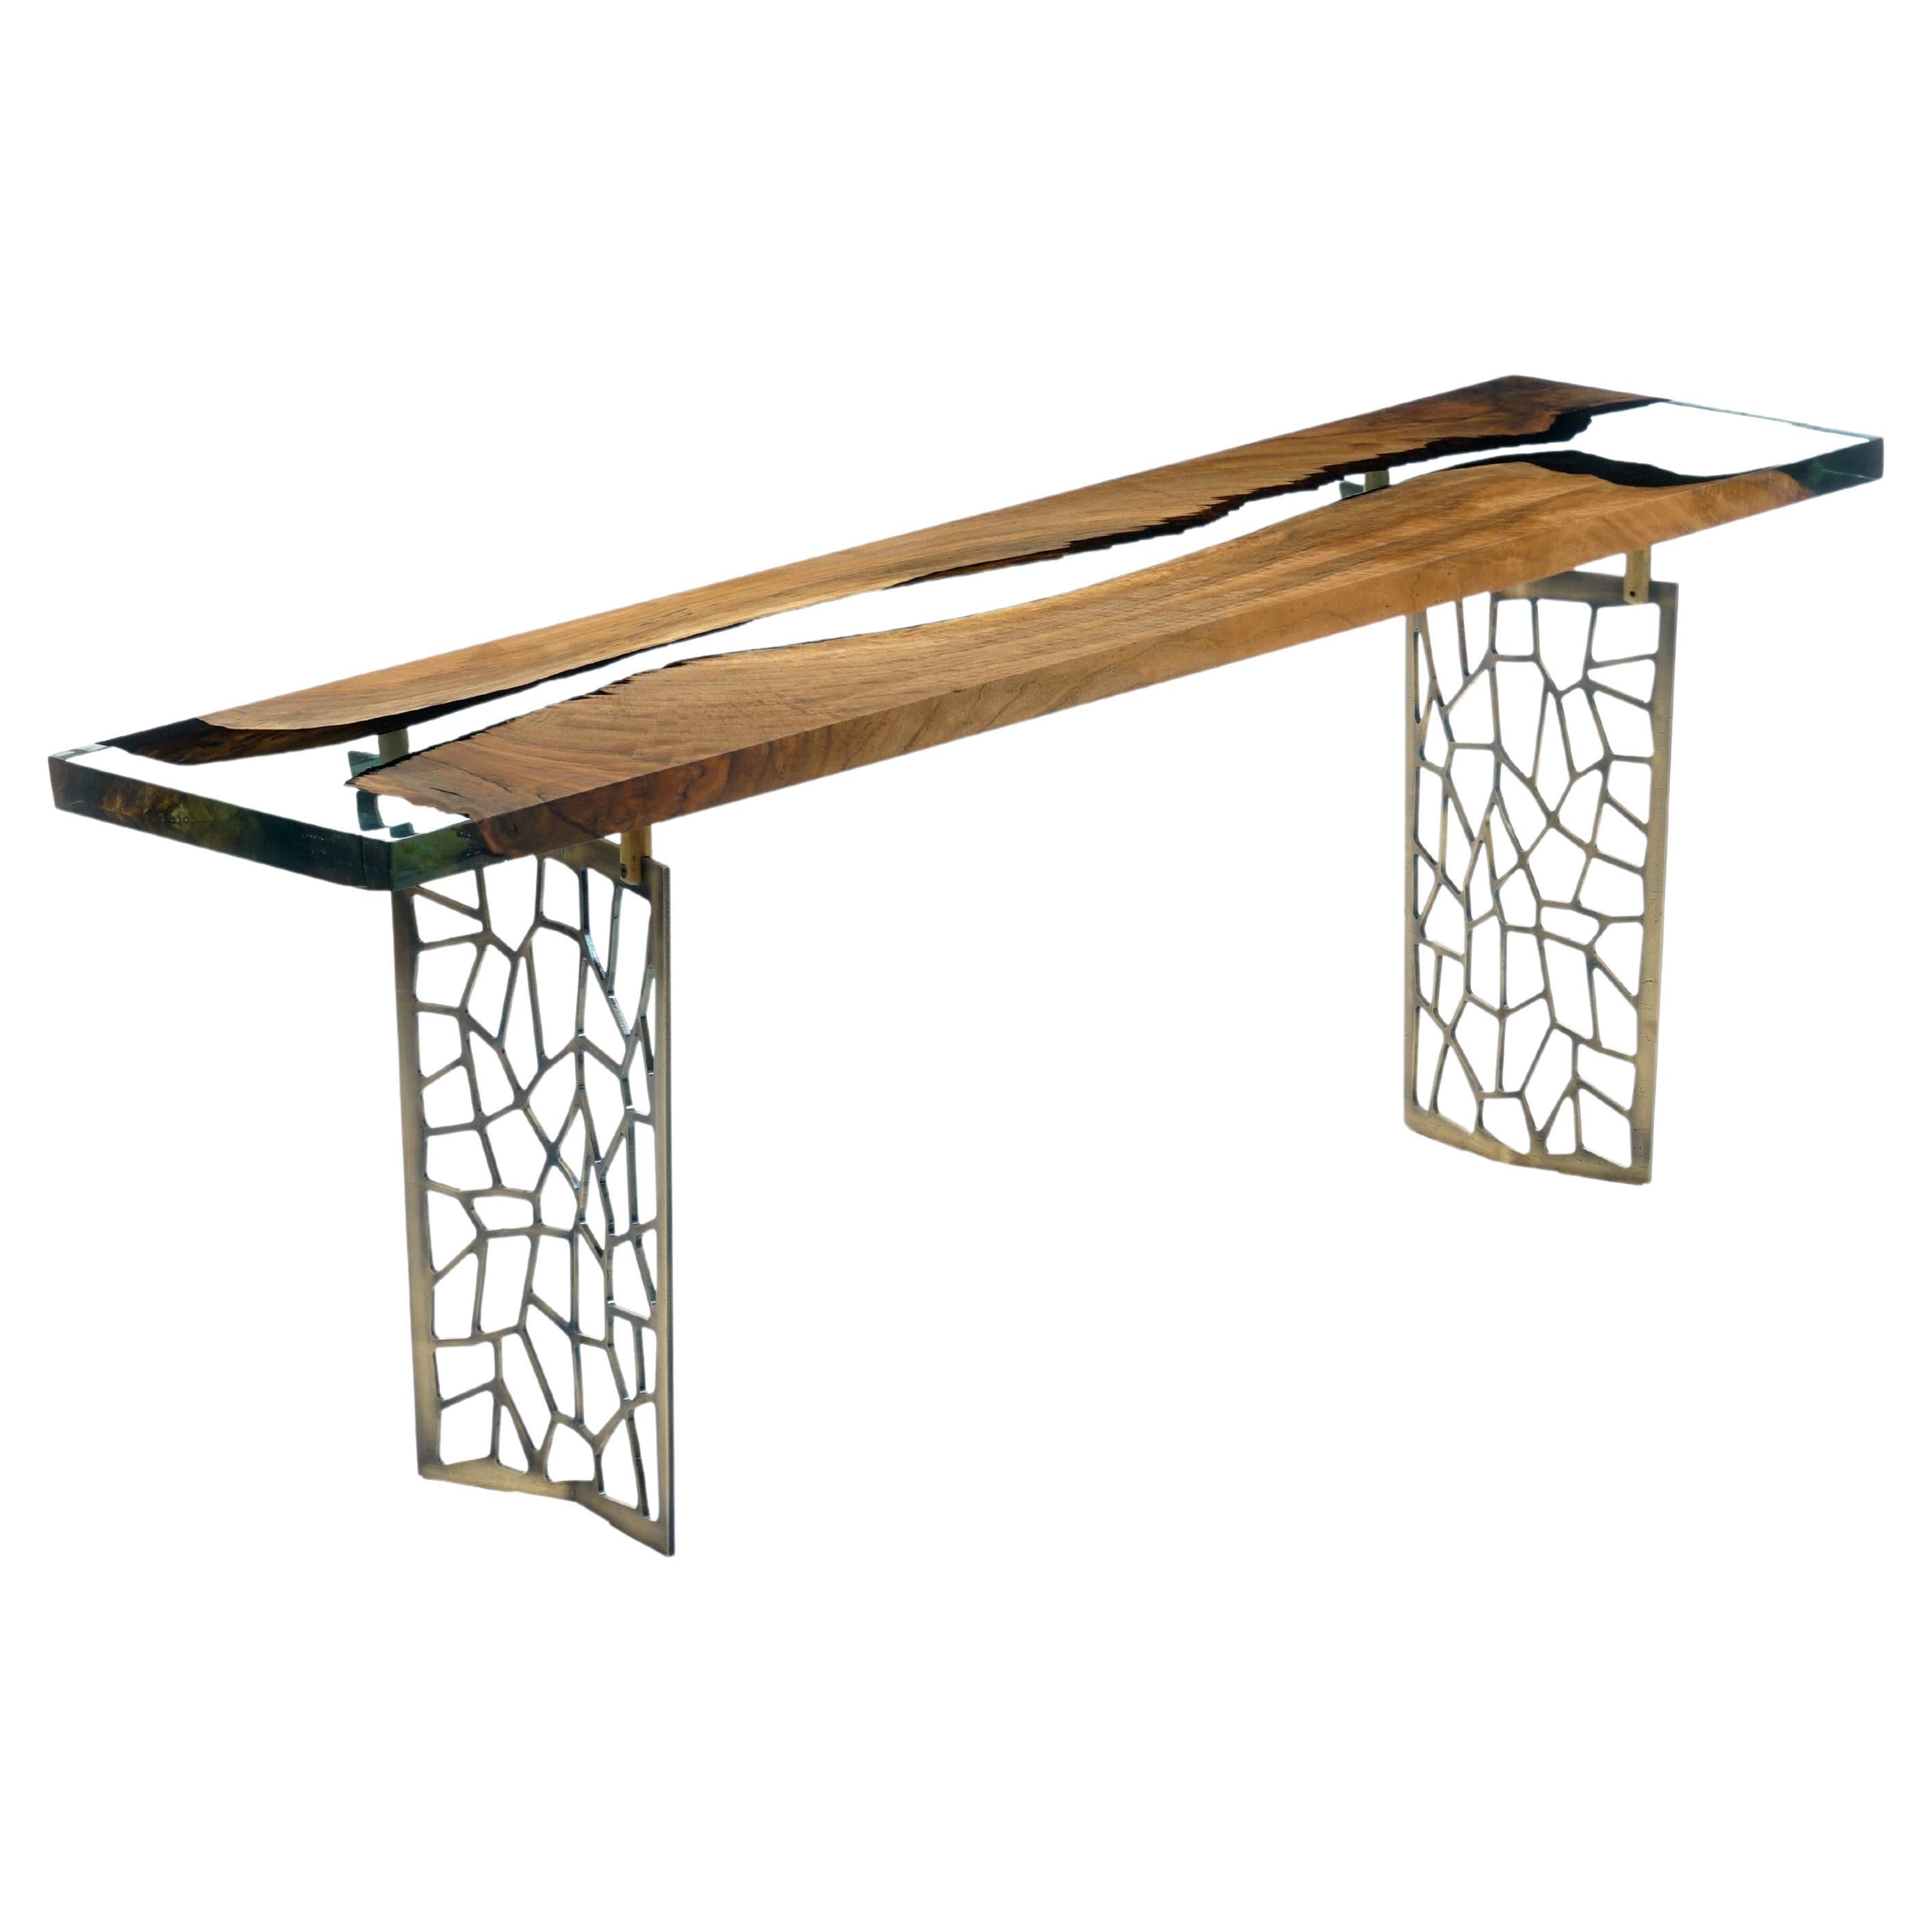 Table console Efil : Table console Laser en aluminium et résine de noyer